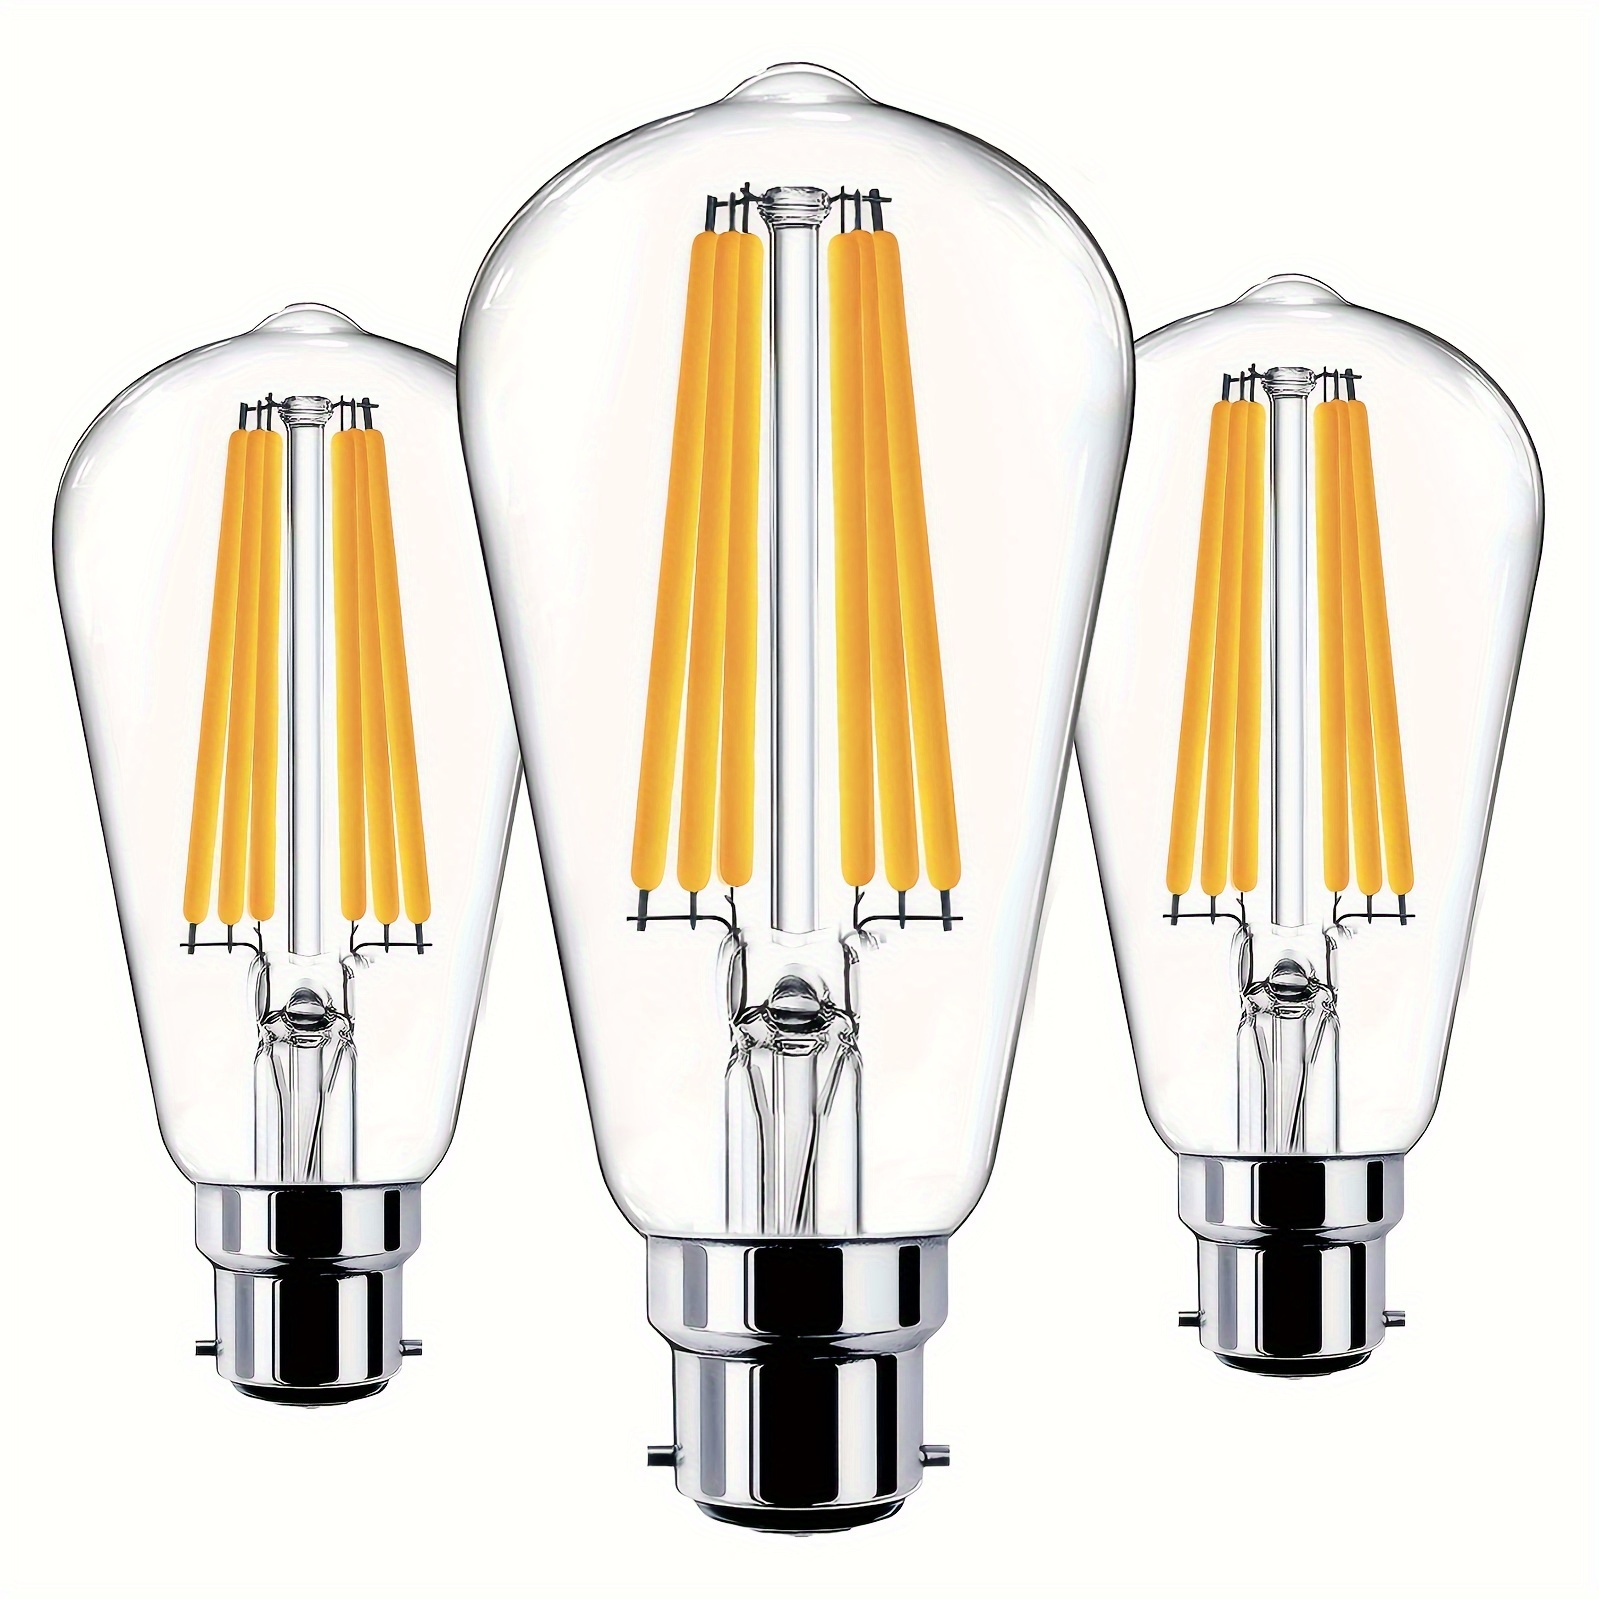 Ampoule LED,T25 E14 4W Ampoule Blanc Chaud 6000K, 400LM, Ampoule Filament  Tubulaire LED pour Hotte